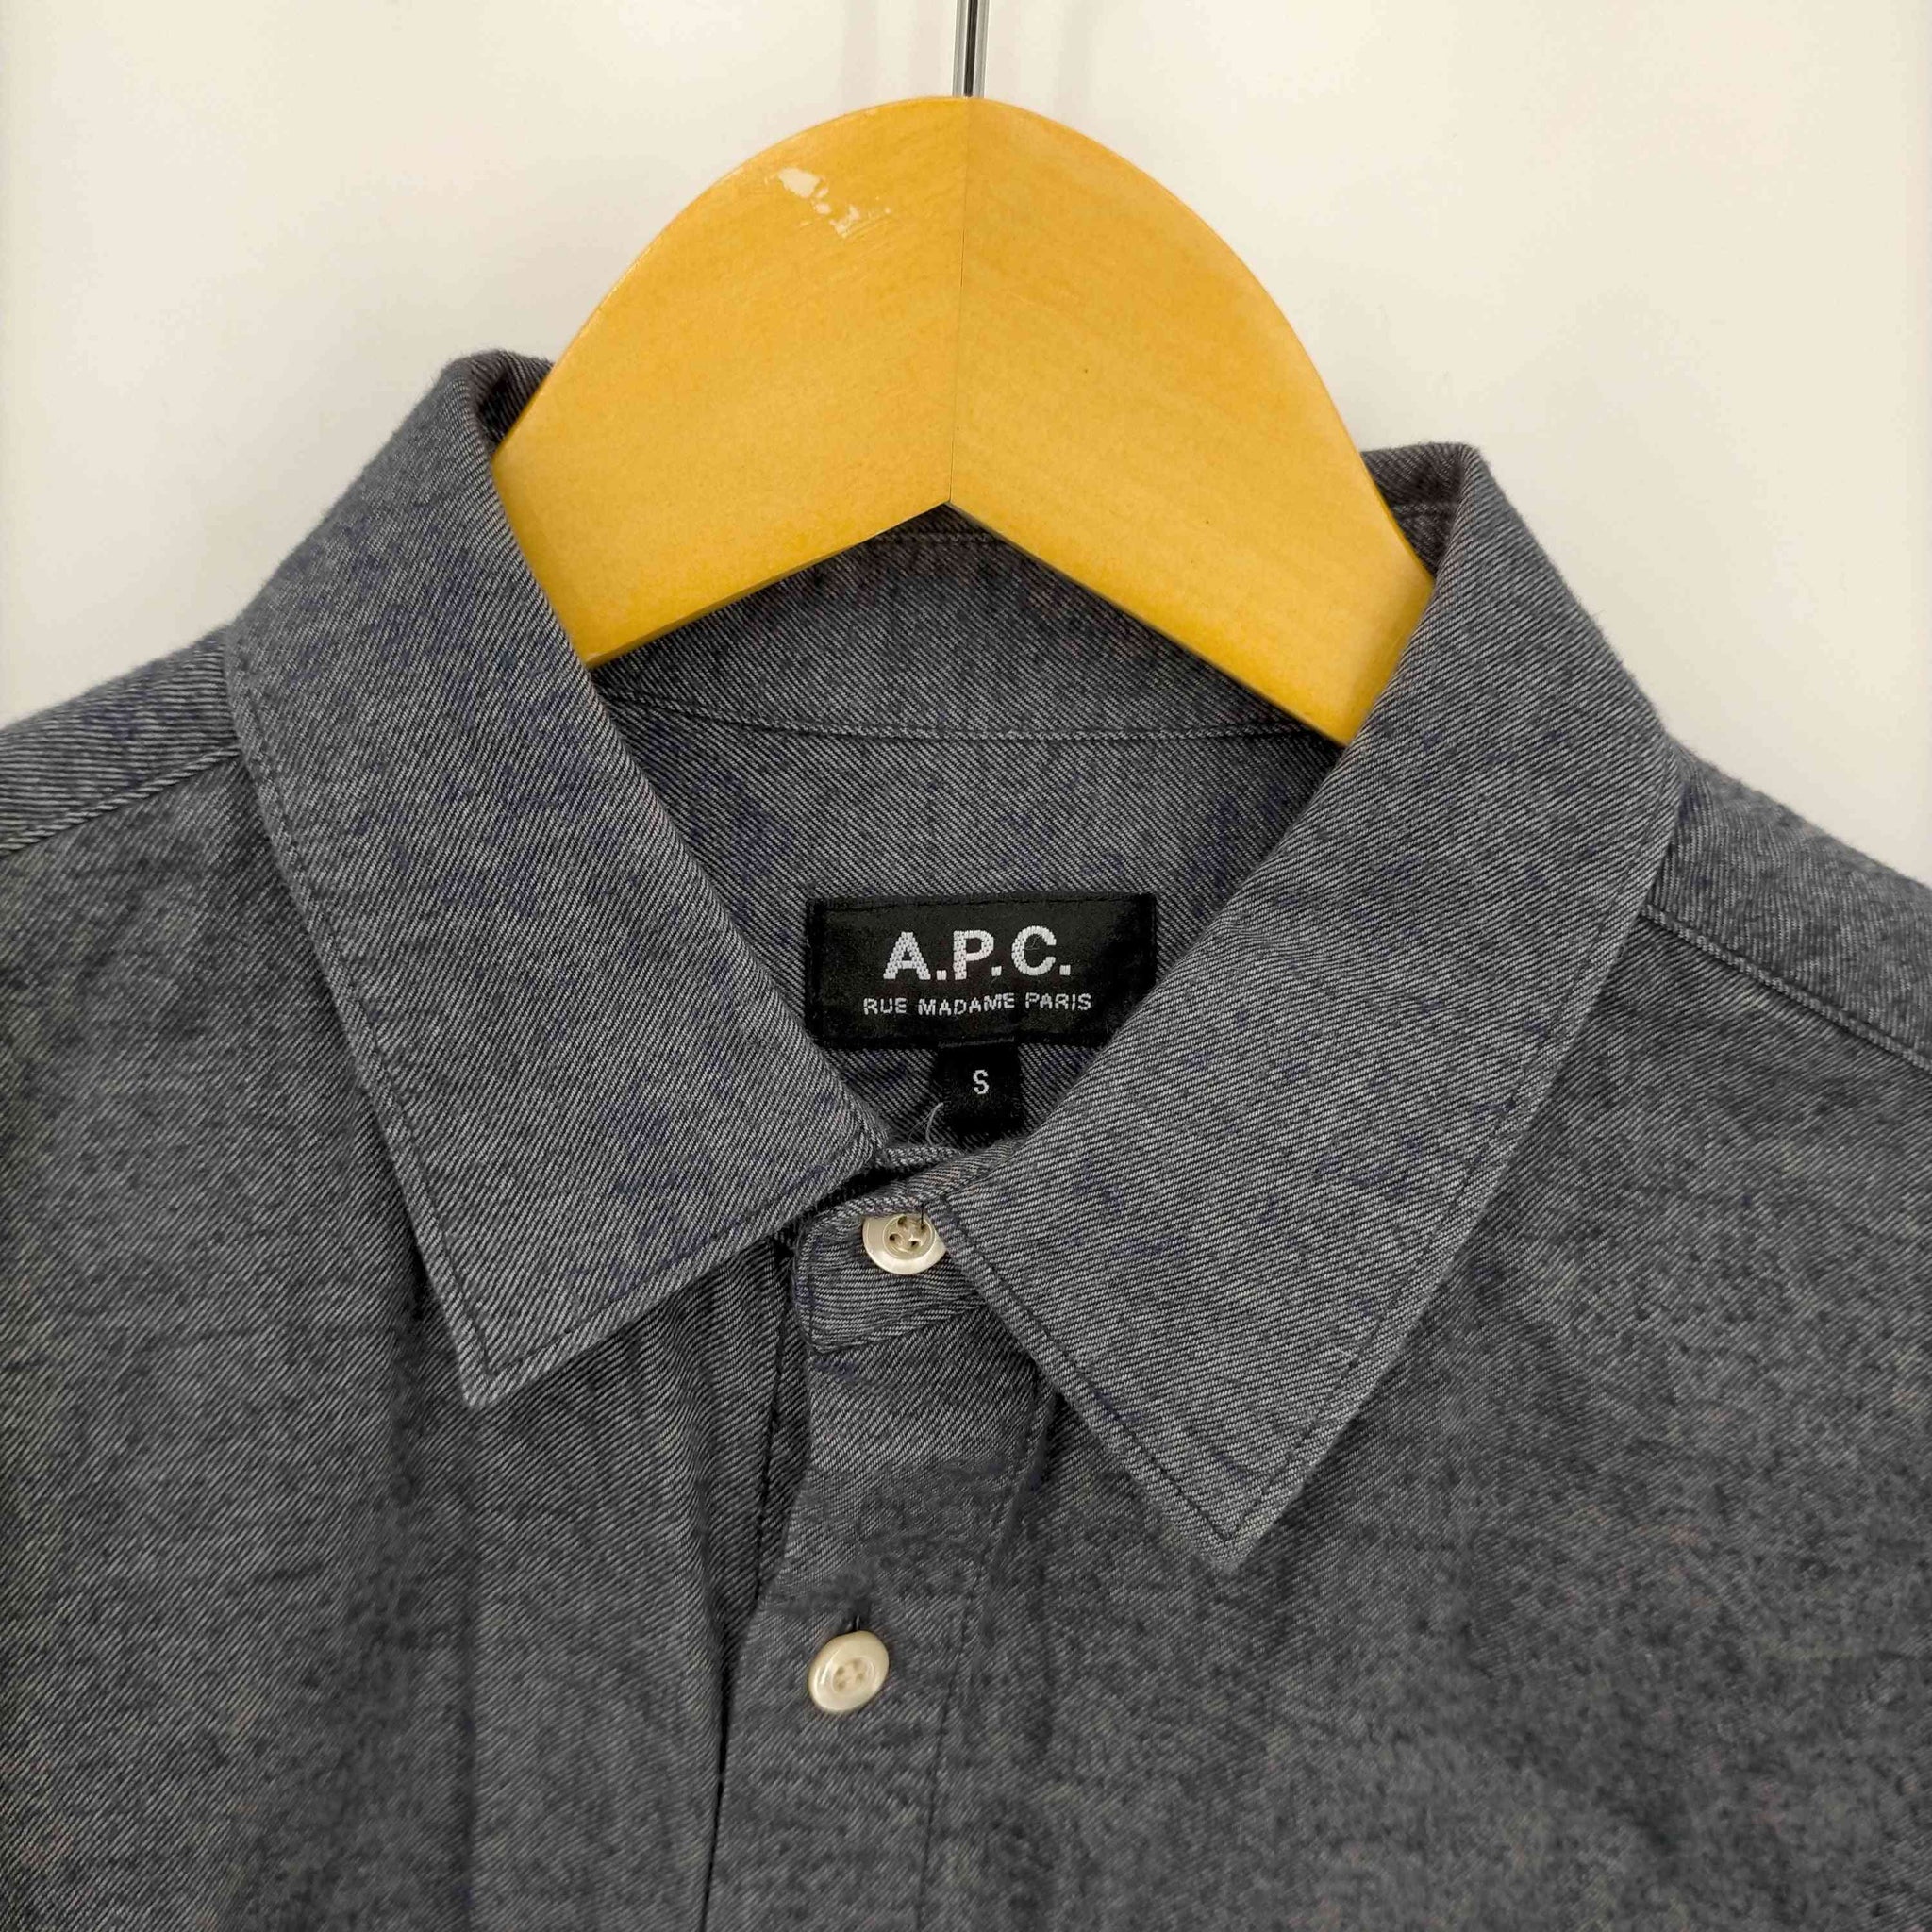 A.P.C.(アーペーセー)レギュラーカラー長袖ネルシャツ – サステナブル